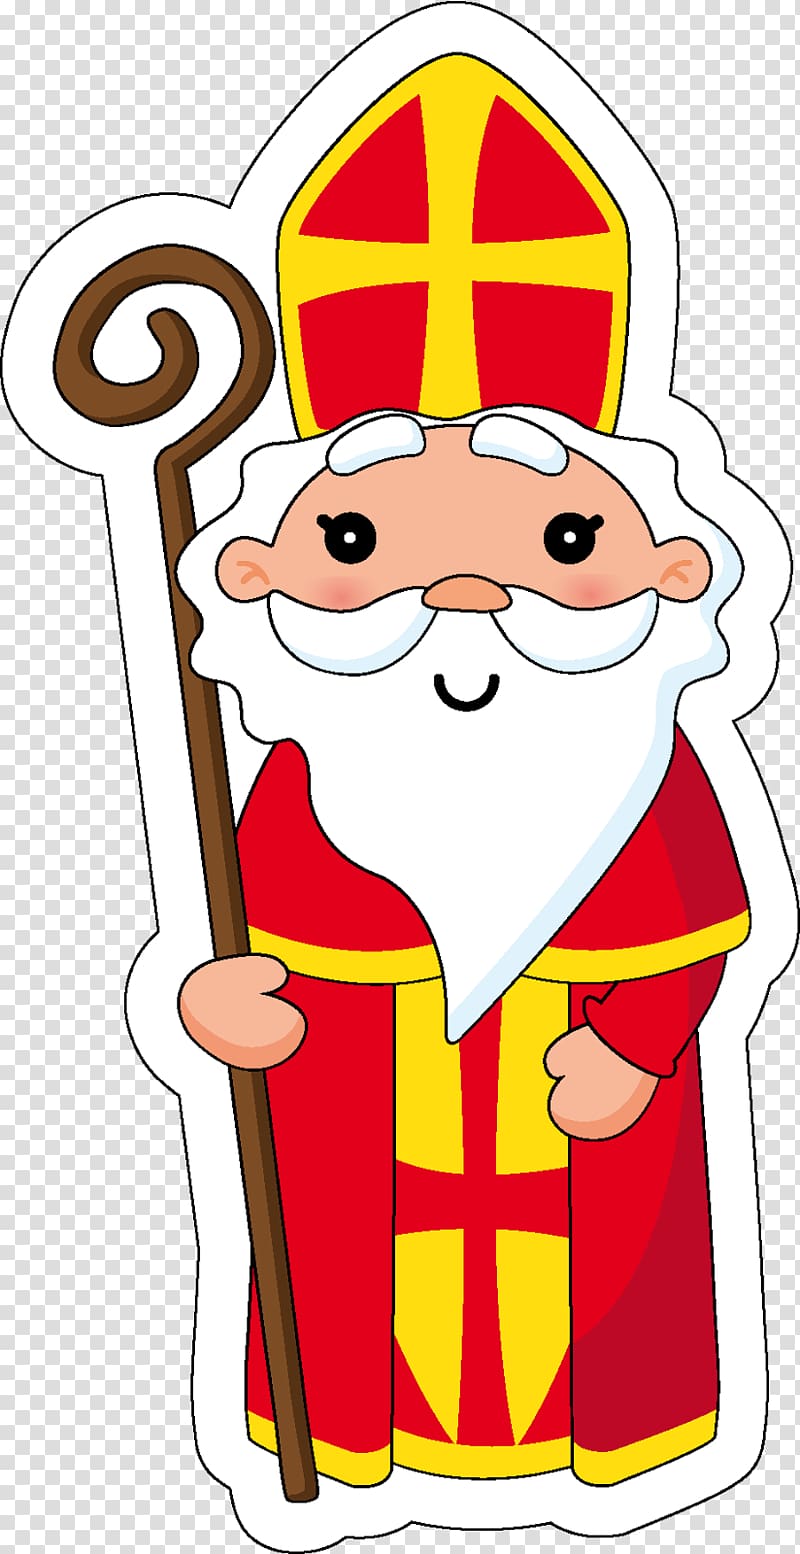 Santa Claus Bredele Saint Nicholas Day Christmas December 6, Saint Nicholas transparent background PNG clipart